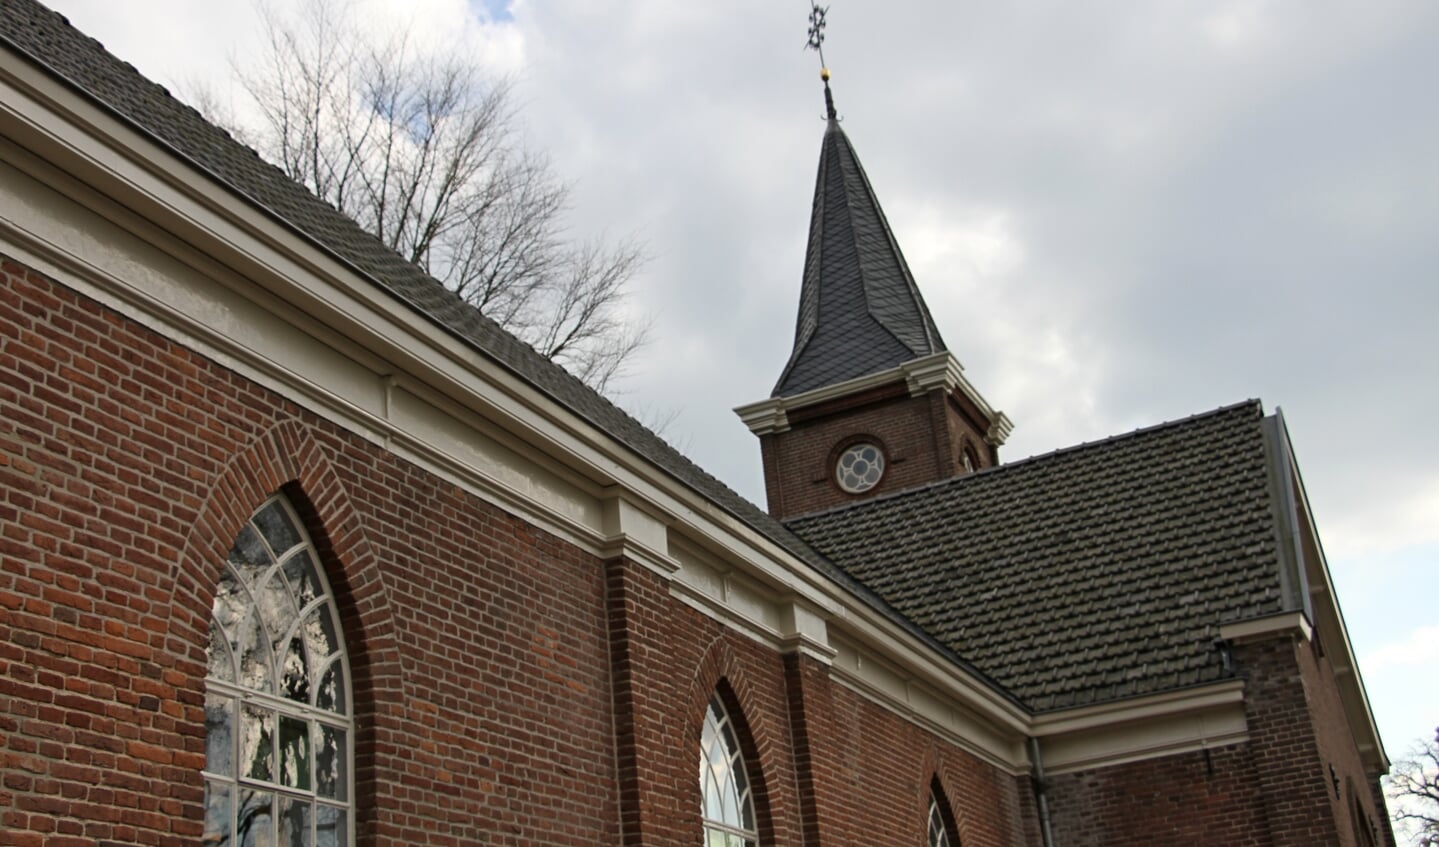 Kerkje van Laag-Keppel, nu galerie Kunst of Art. Foto: Liesbeth Spaansen